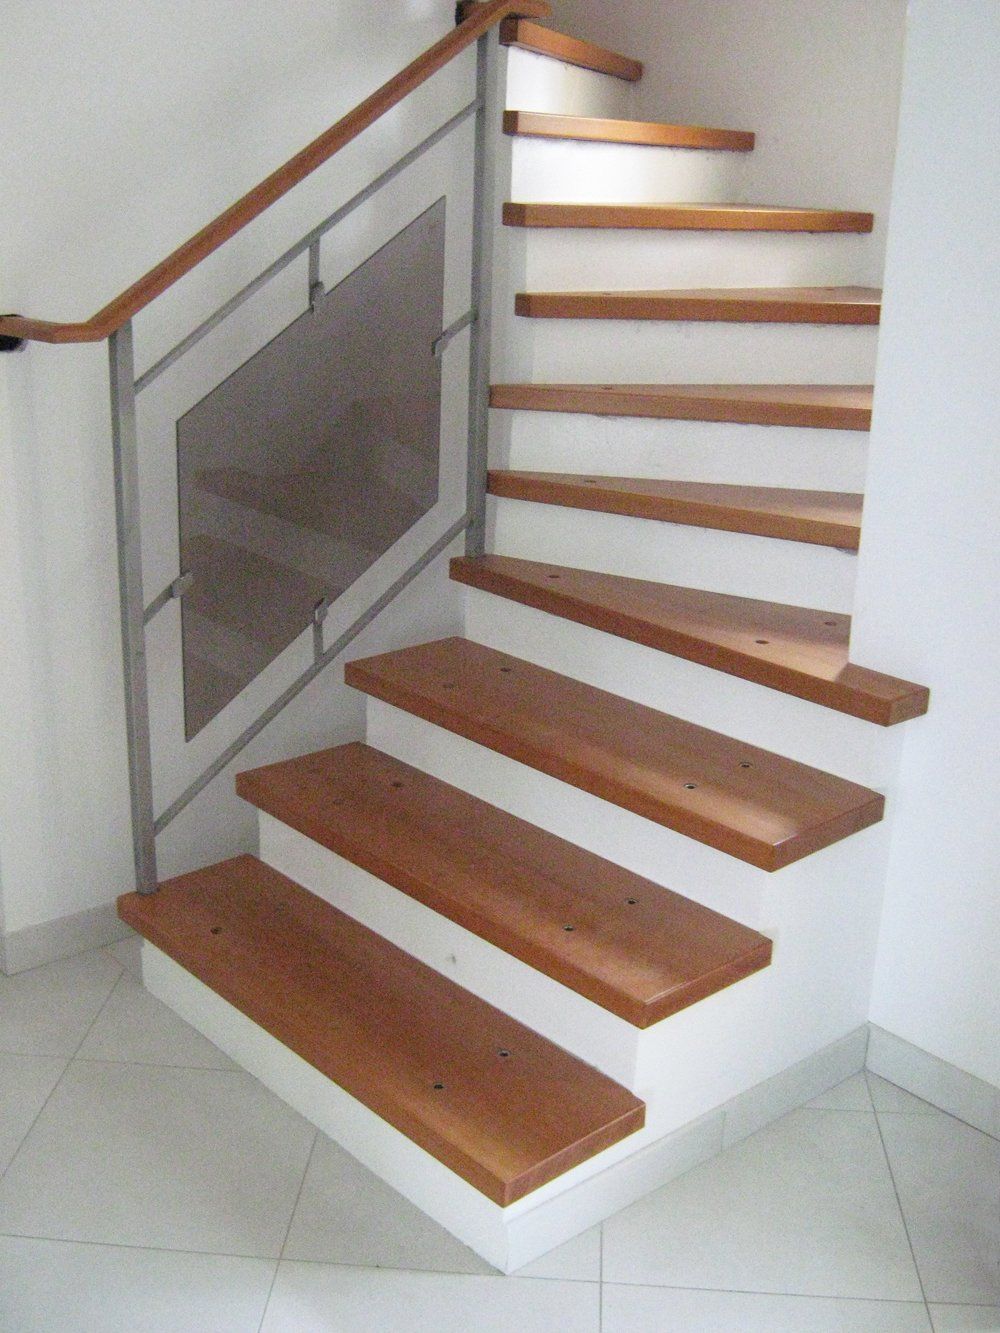 Menuiserie Vautier 95, fabrication traditionnelle et installation d'escaliers de tous styles , menuiserie traditionnelle